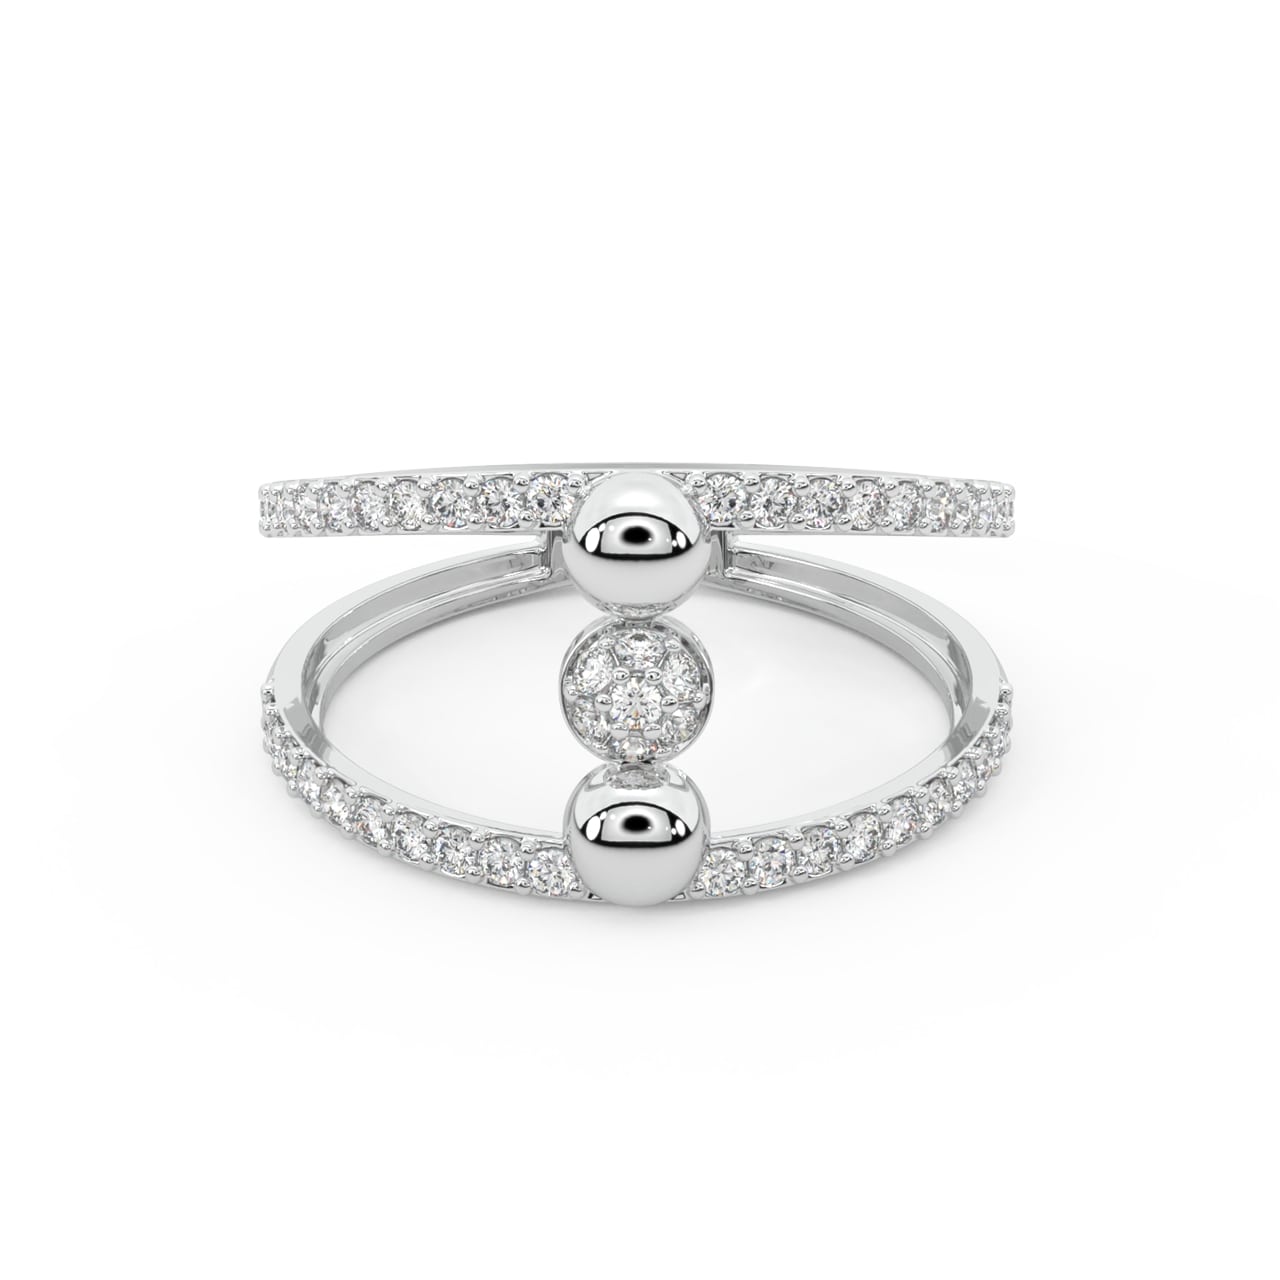 Tivona Round Diamond Engagement Ring